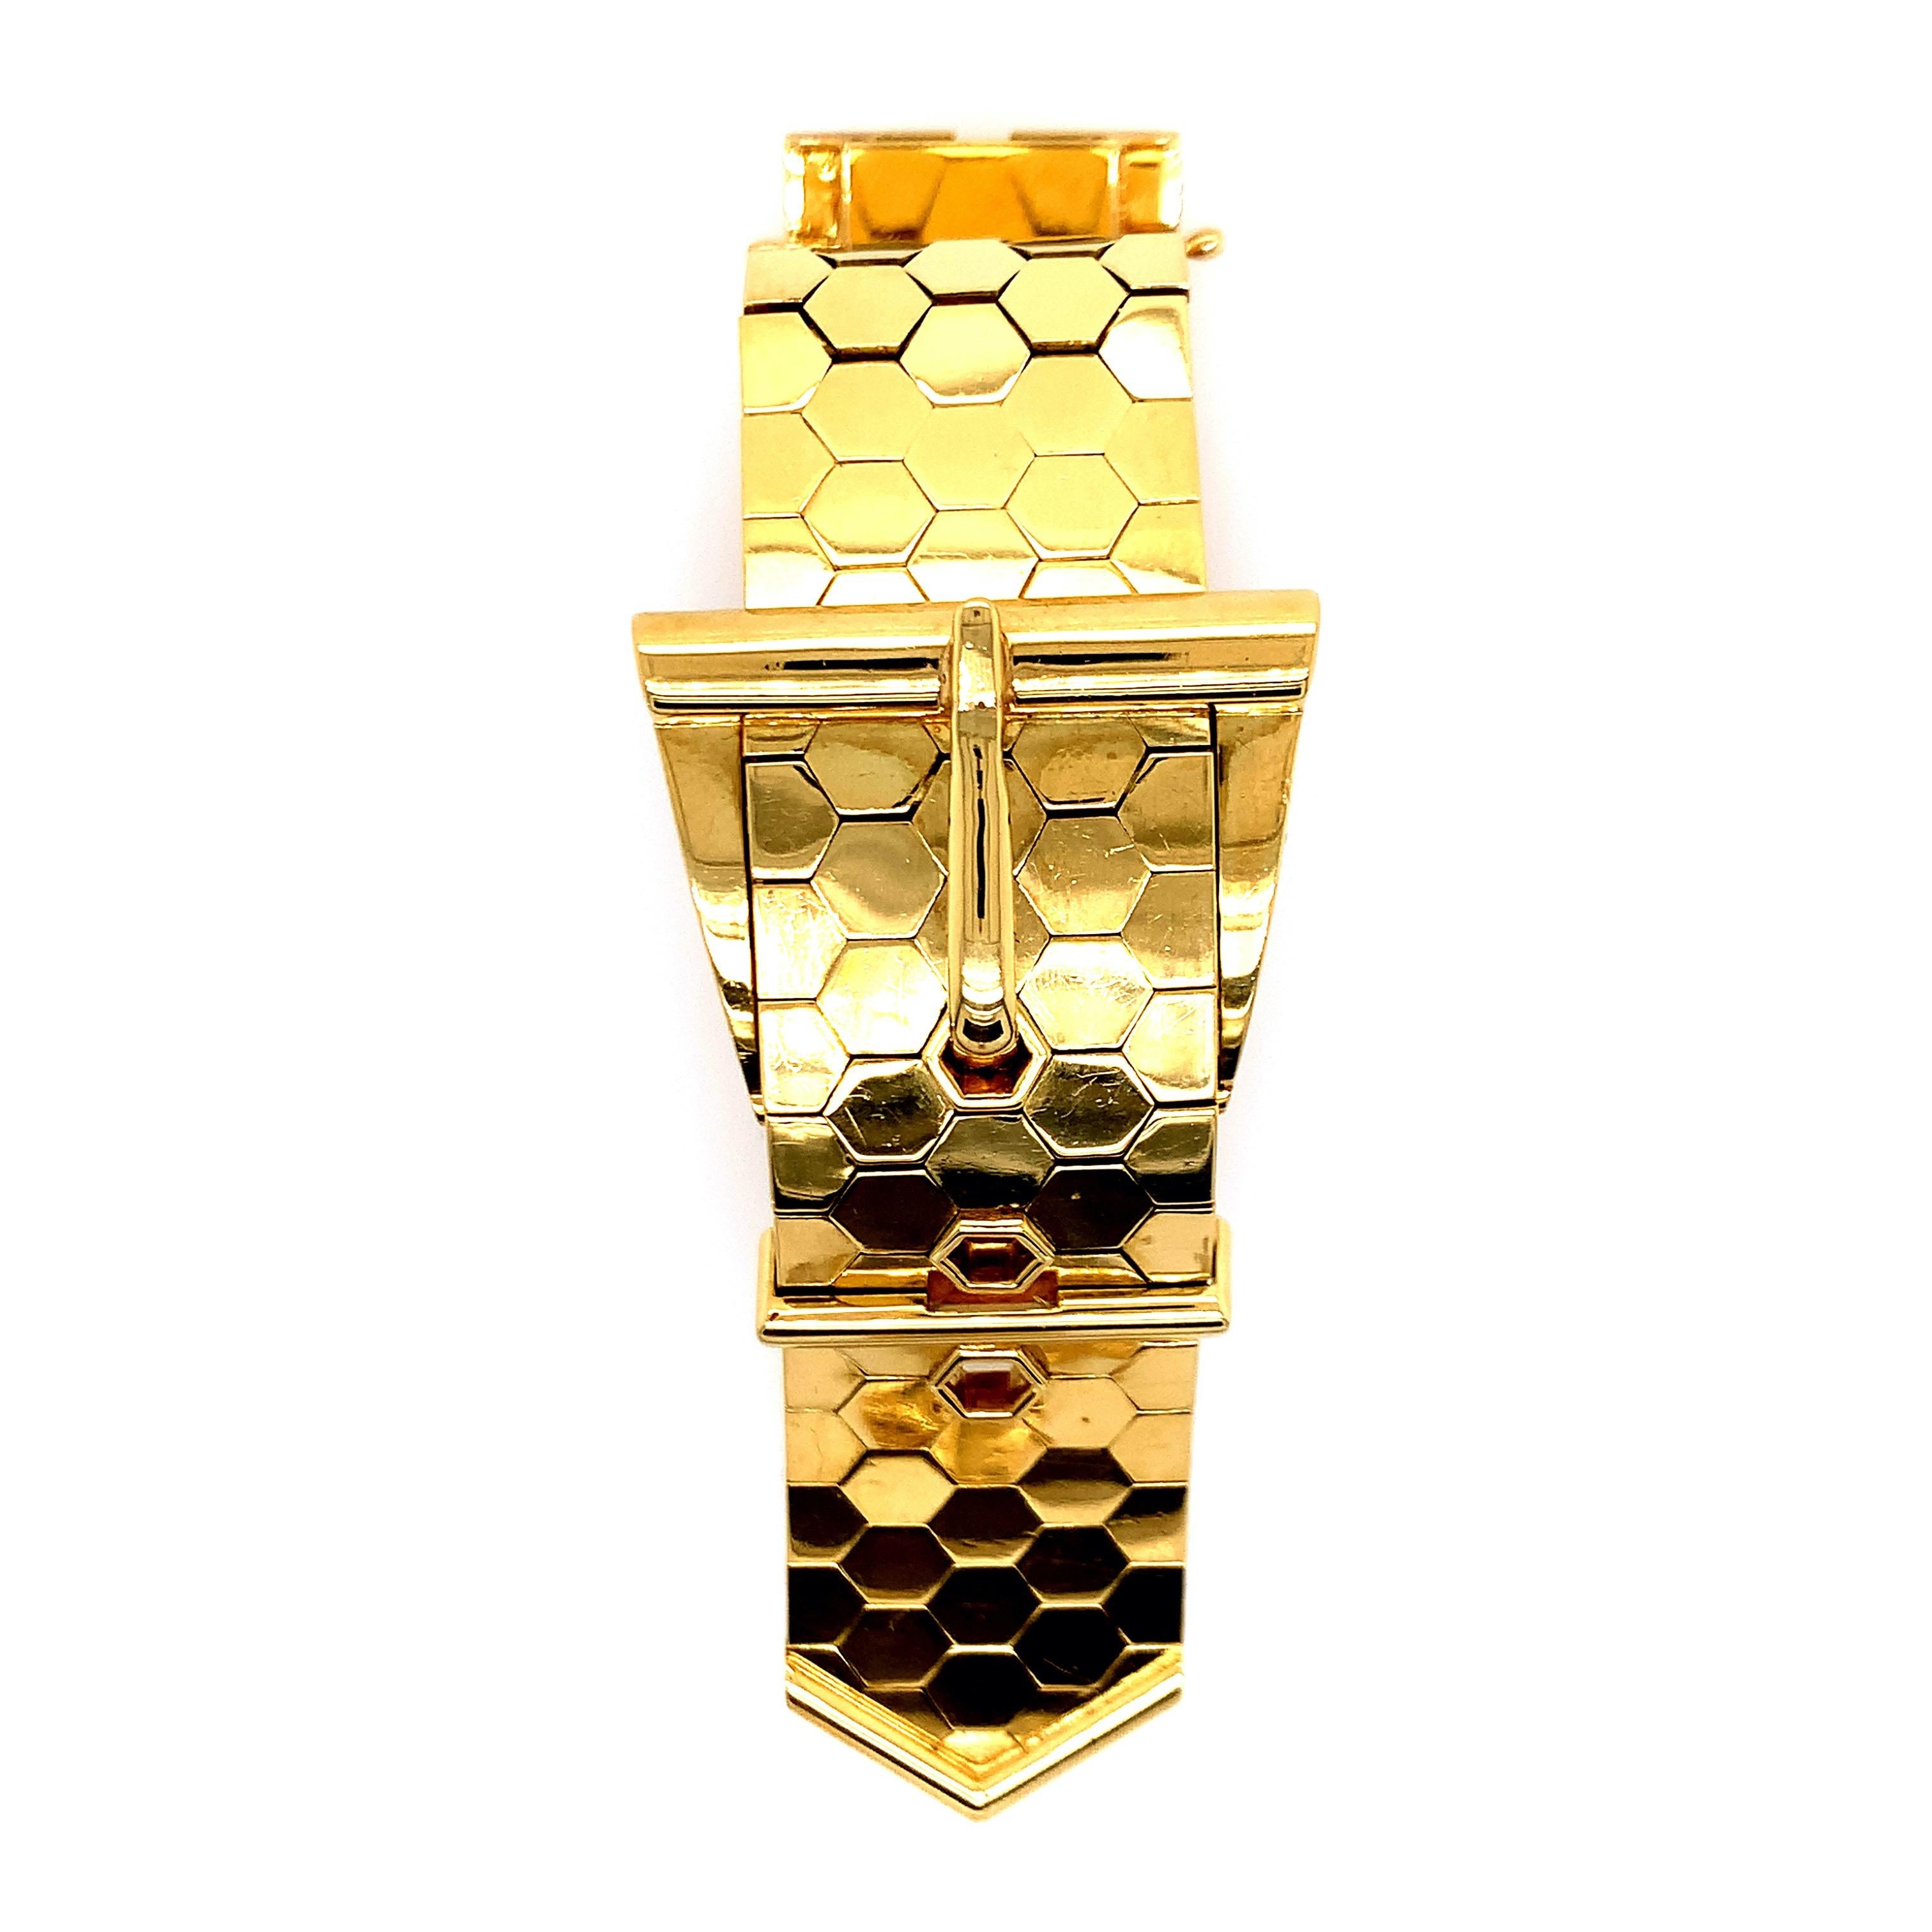 Eine Armbanduhr aus 18 Karat Gelbgold mit Gürtelschnalle. Der Gurt hat ein Wabenmuster, wodurch er flexibel ist. Das Uhrwerk stammt von der International Watch Company (IWC). Hergestellt in der Schweiz. Herstellermarke: HP. Seriennummer: 1362265.